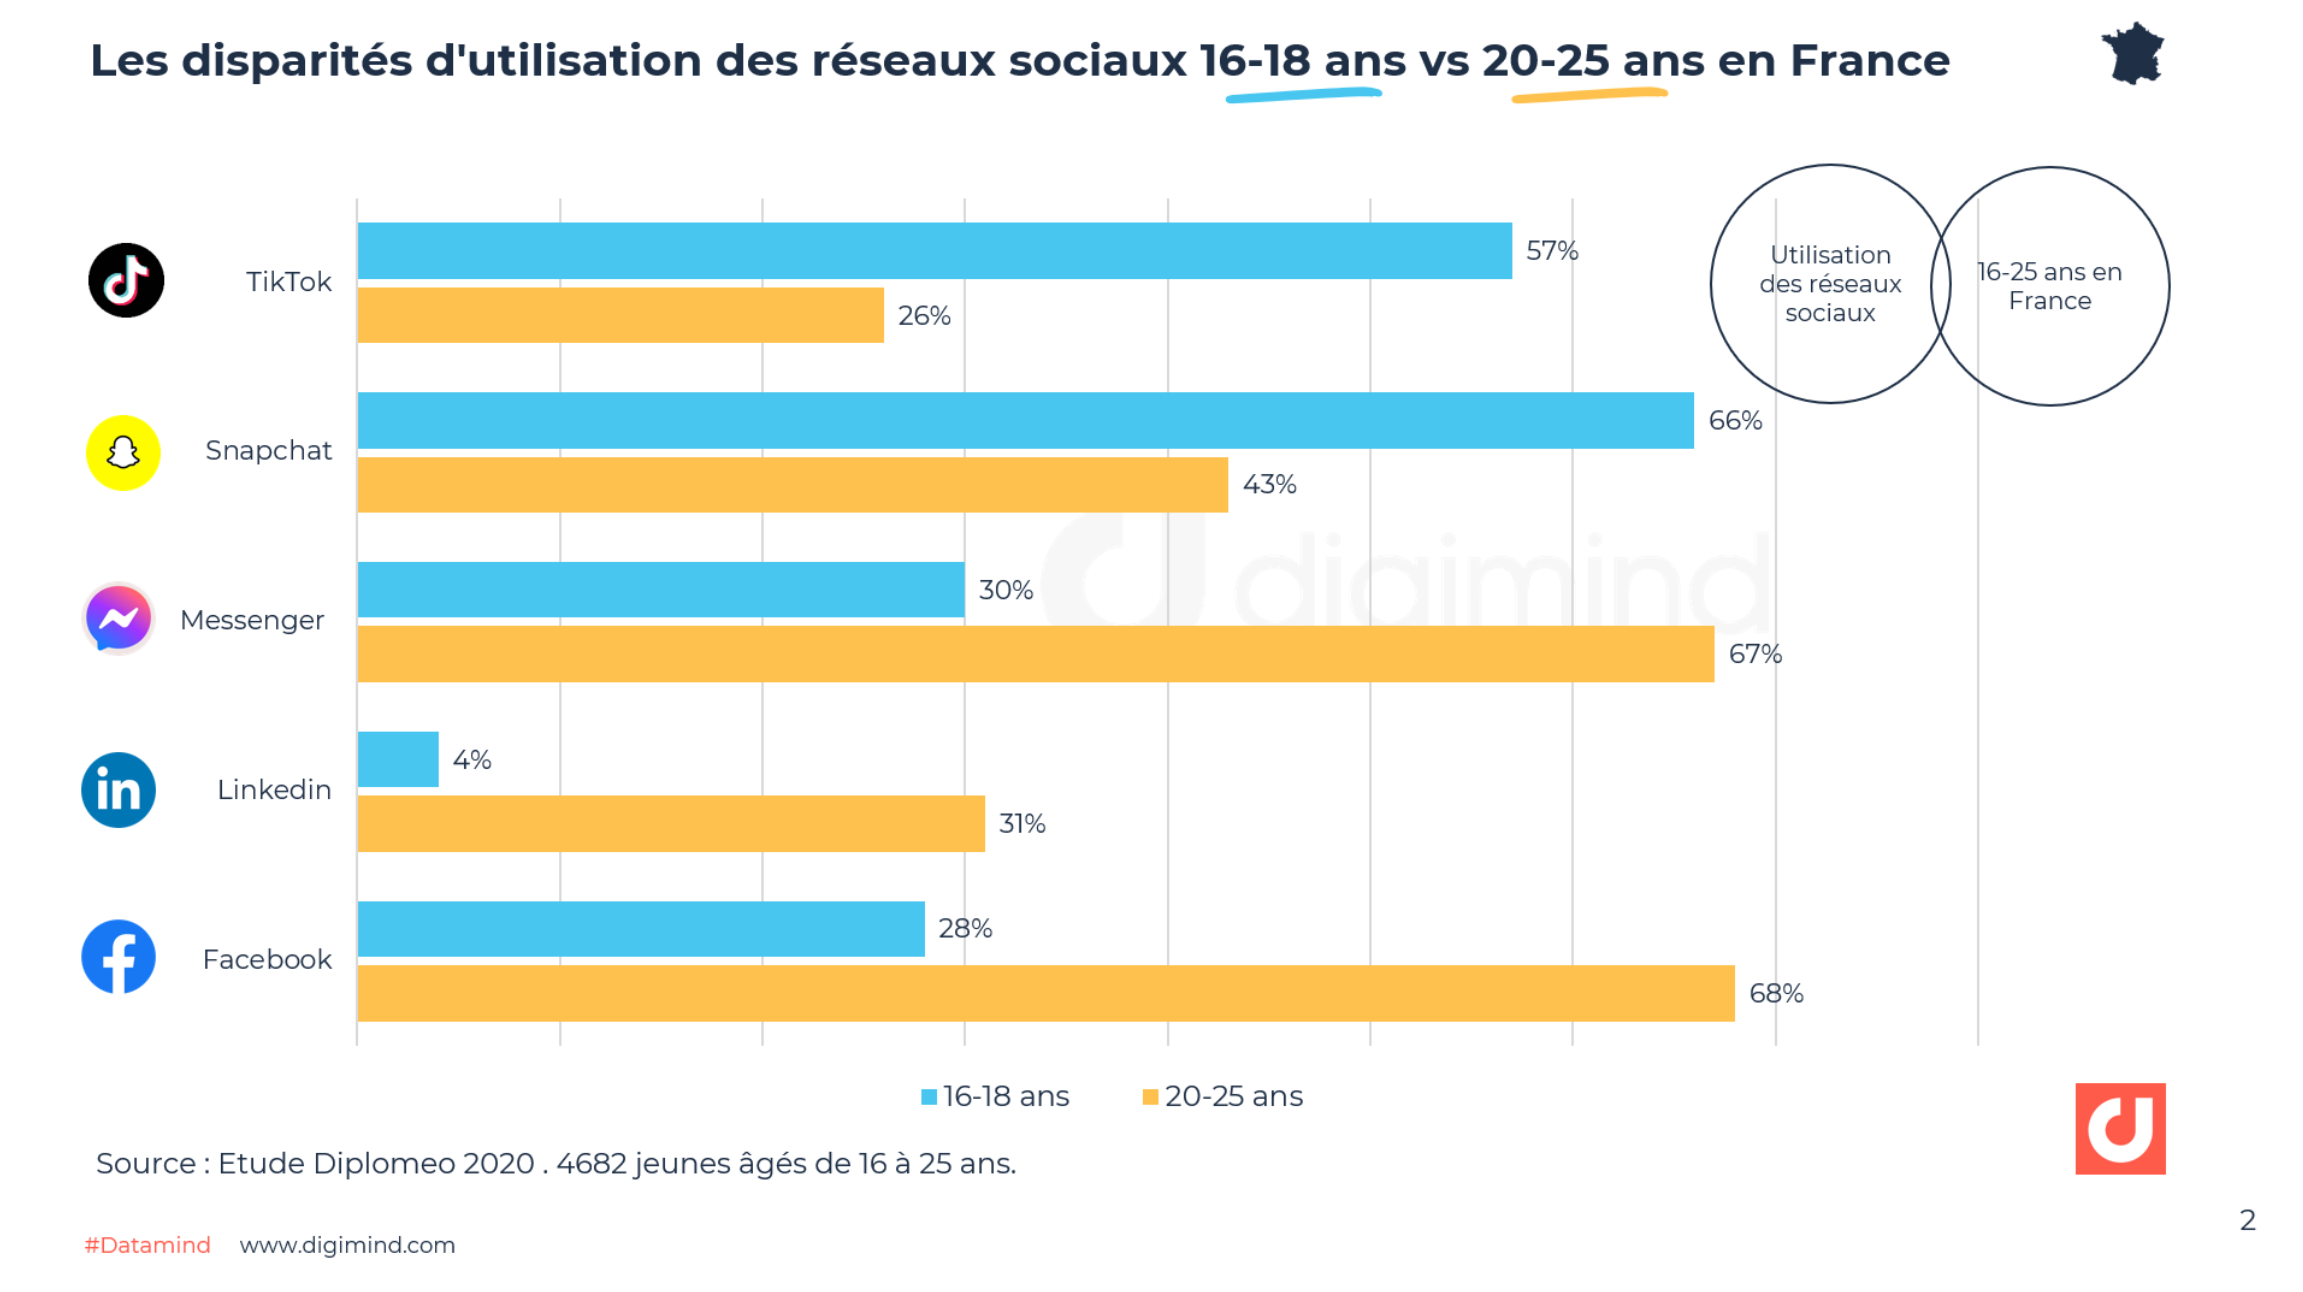 Les disparités d'utilisation des réseaux sociaux 16-18 ans vs 20-25 ans en France